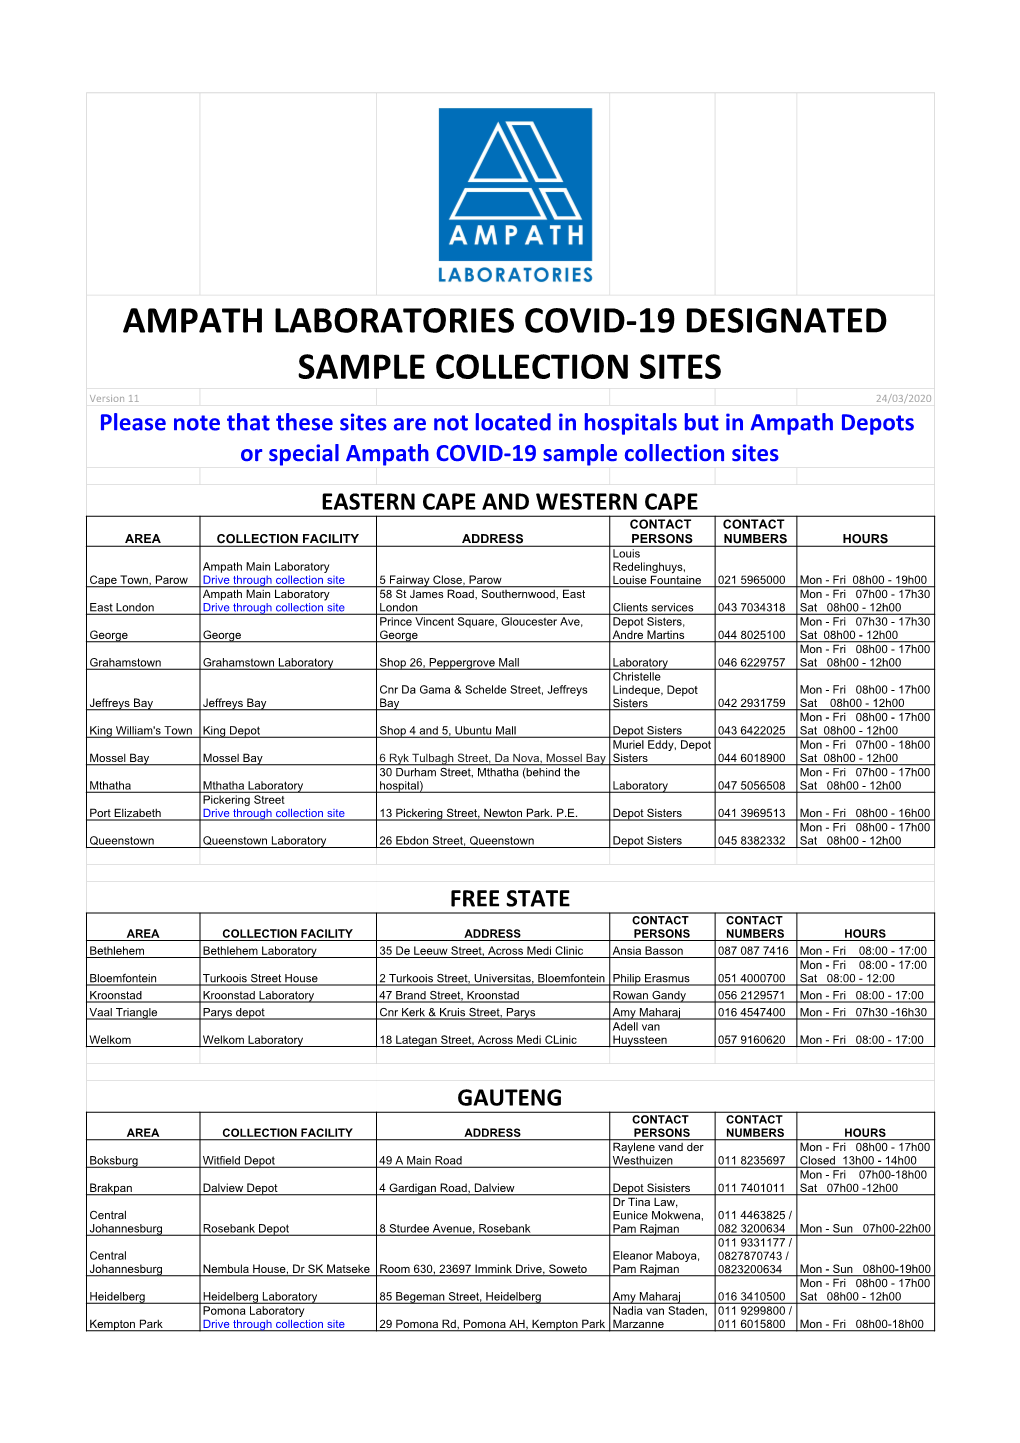 Ampath Designated Covid-19 Sample Collection Sites V.11